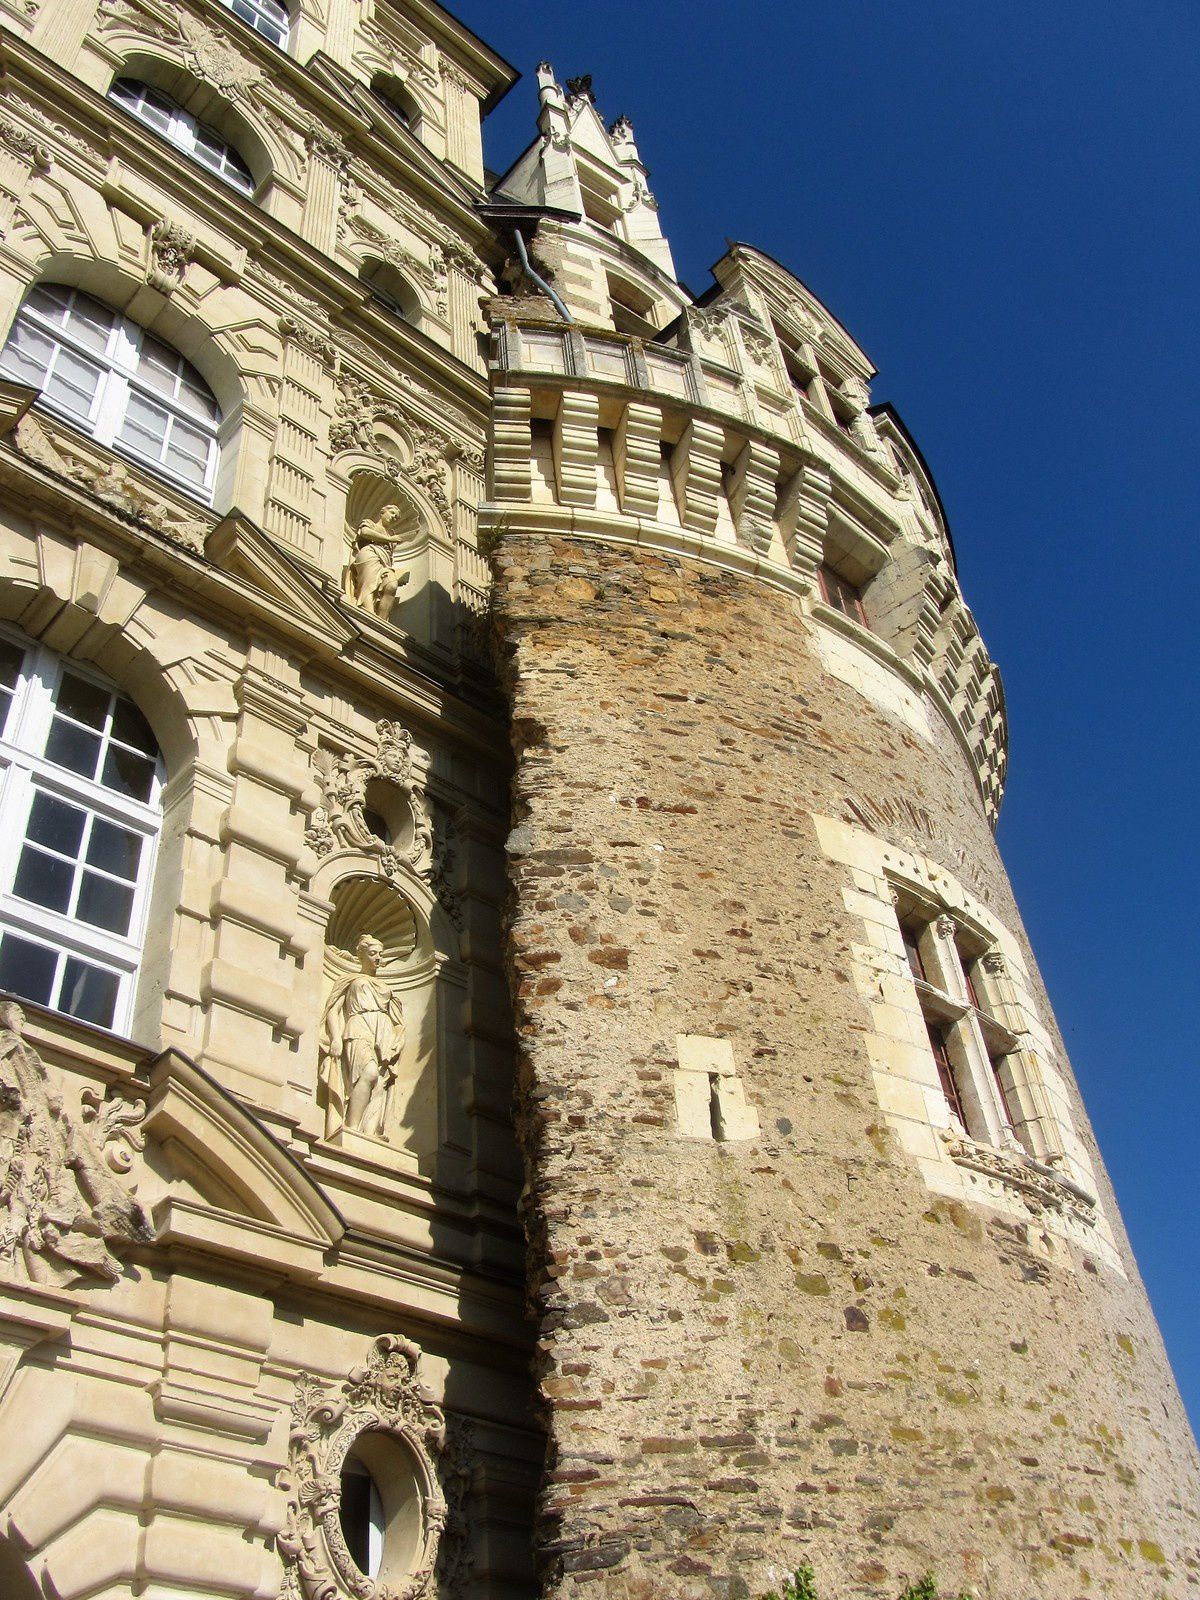 Nous sommes allés visiter le château de Brissac le plus haut château de France : 7 étages !!